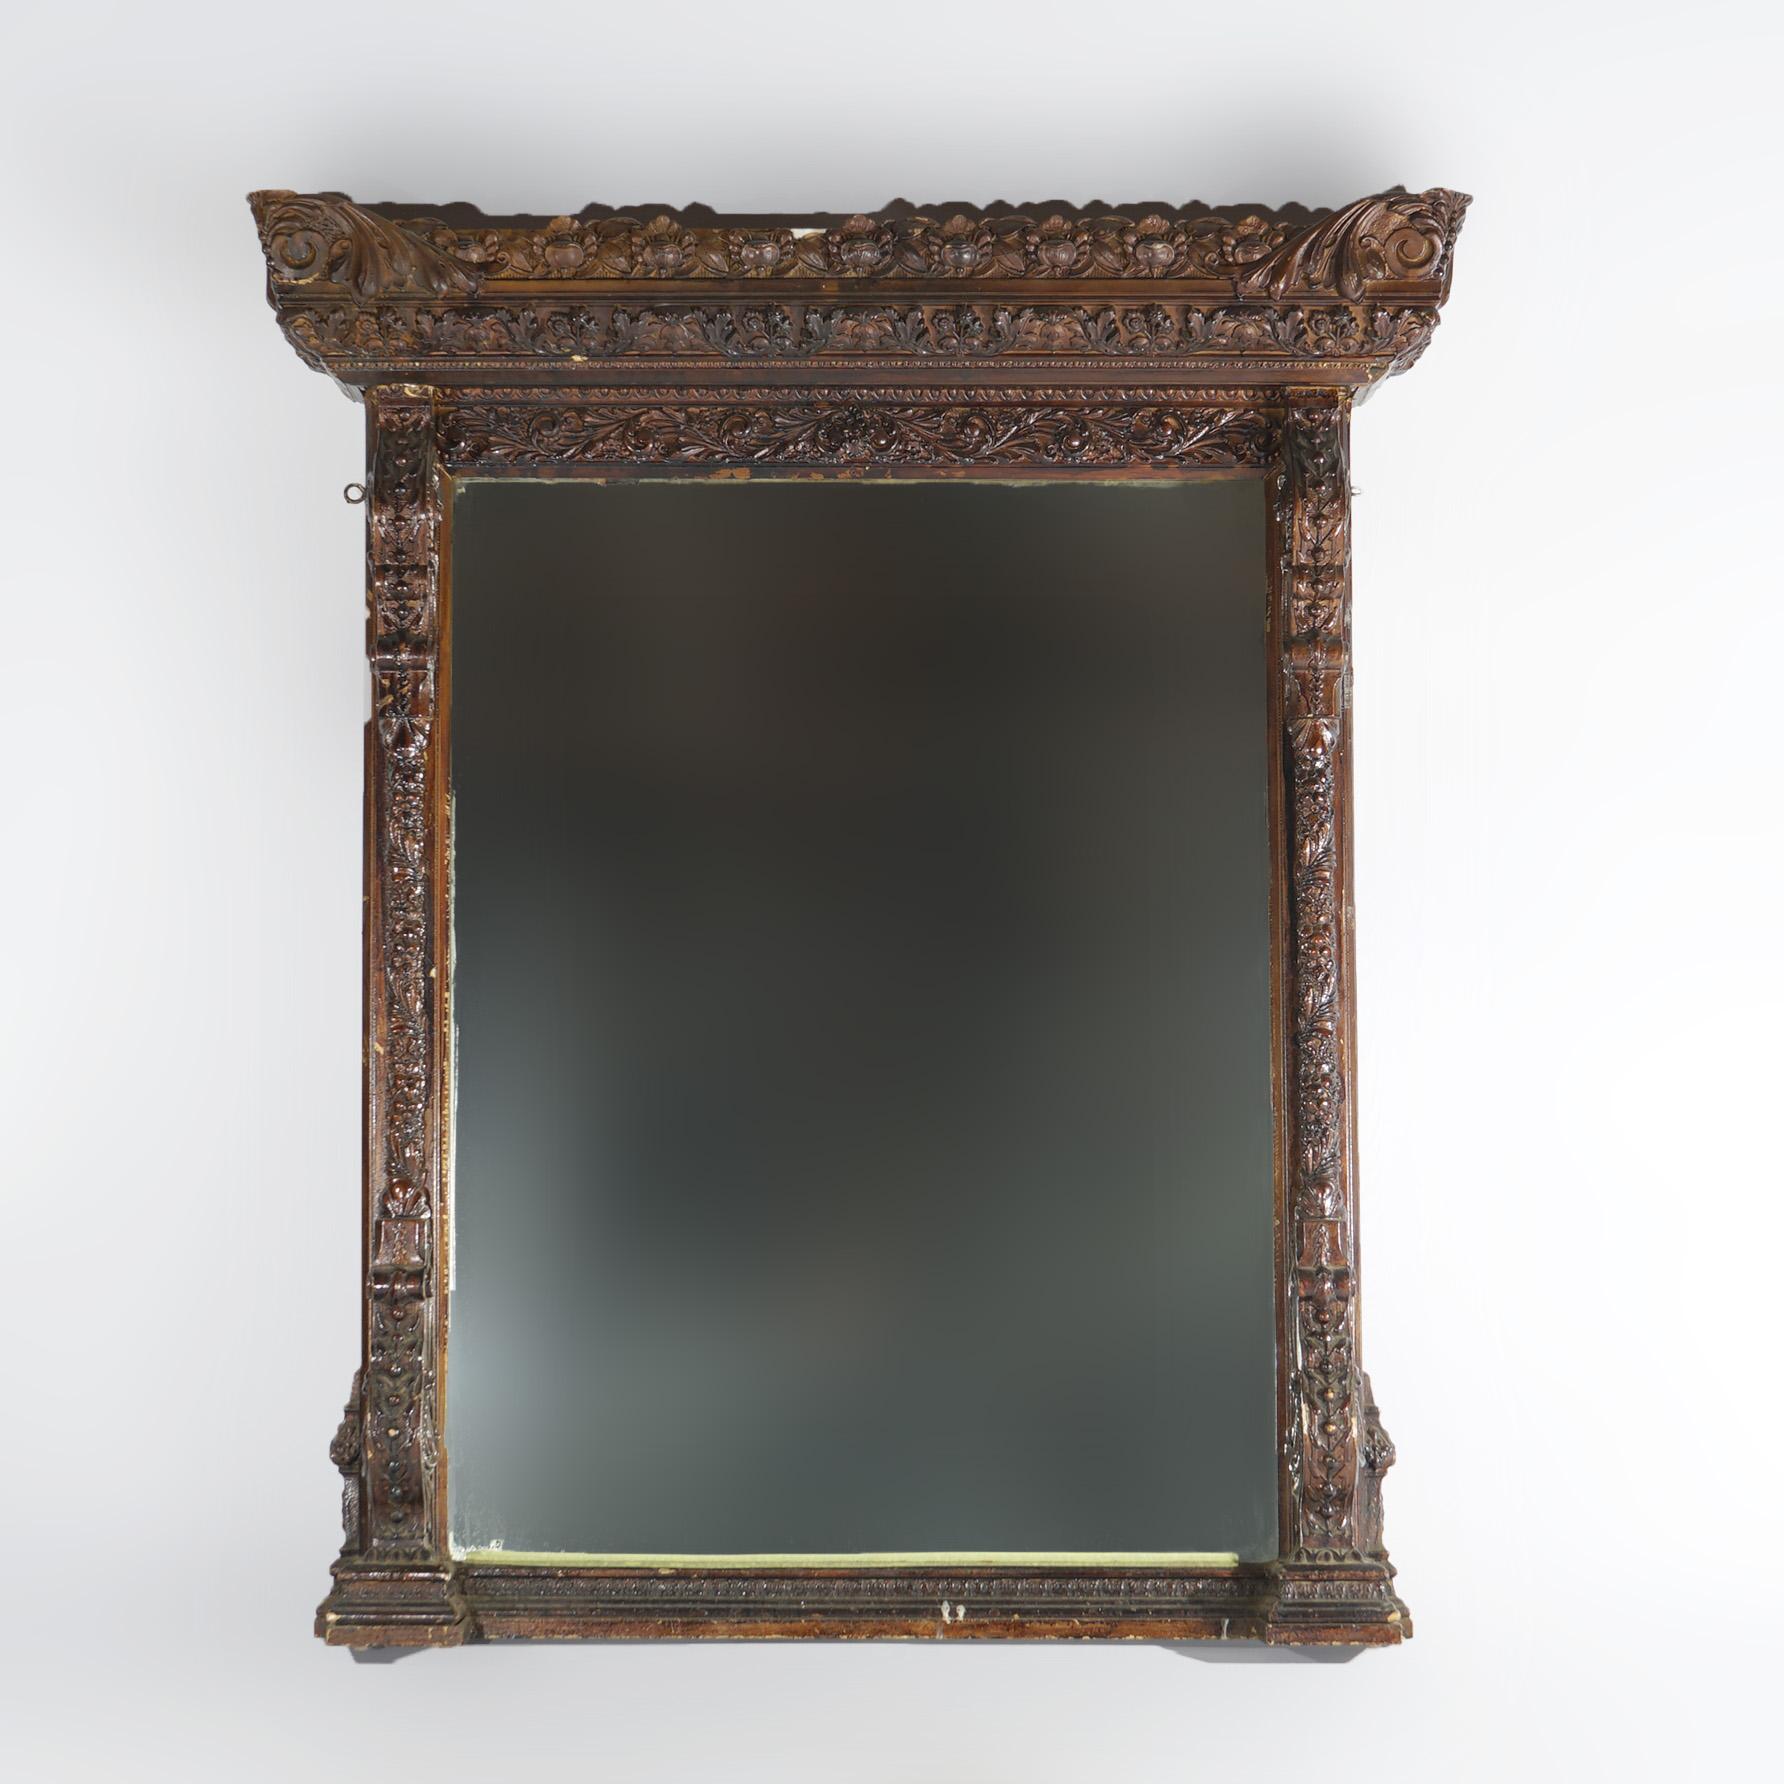 Miroir de cheminée antique de style Renaissance, avec cadre en bois sculpté et gesso présentant des éléments de feuillage, de fruits, de noix et de volutes, 19e siècle.

Dimensions - 60 